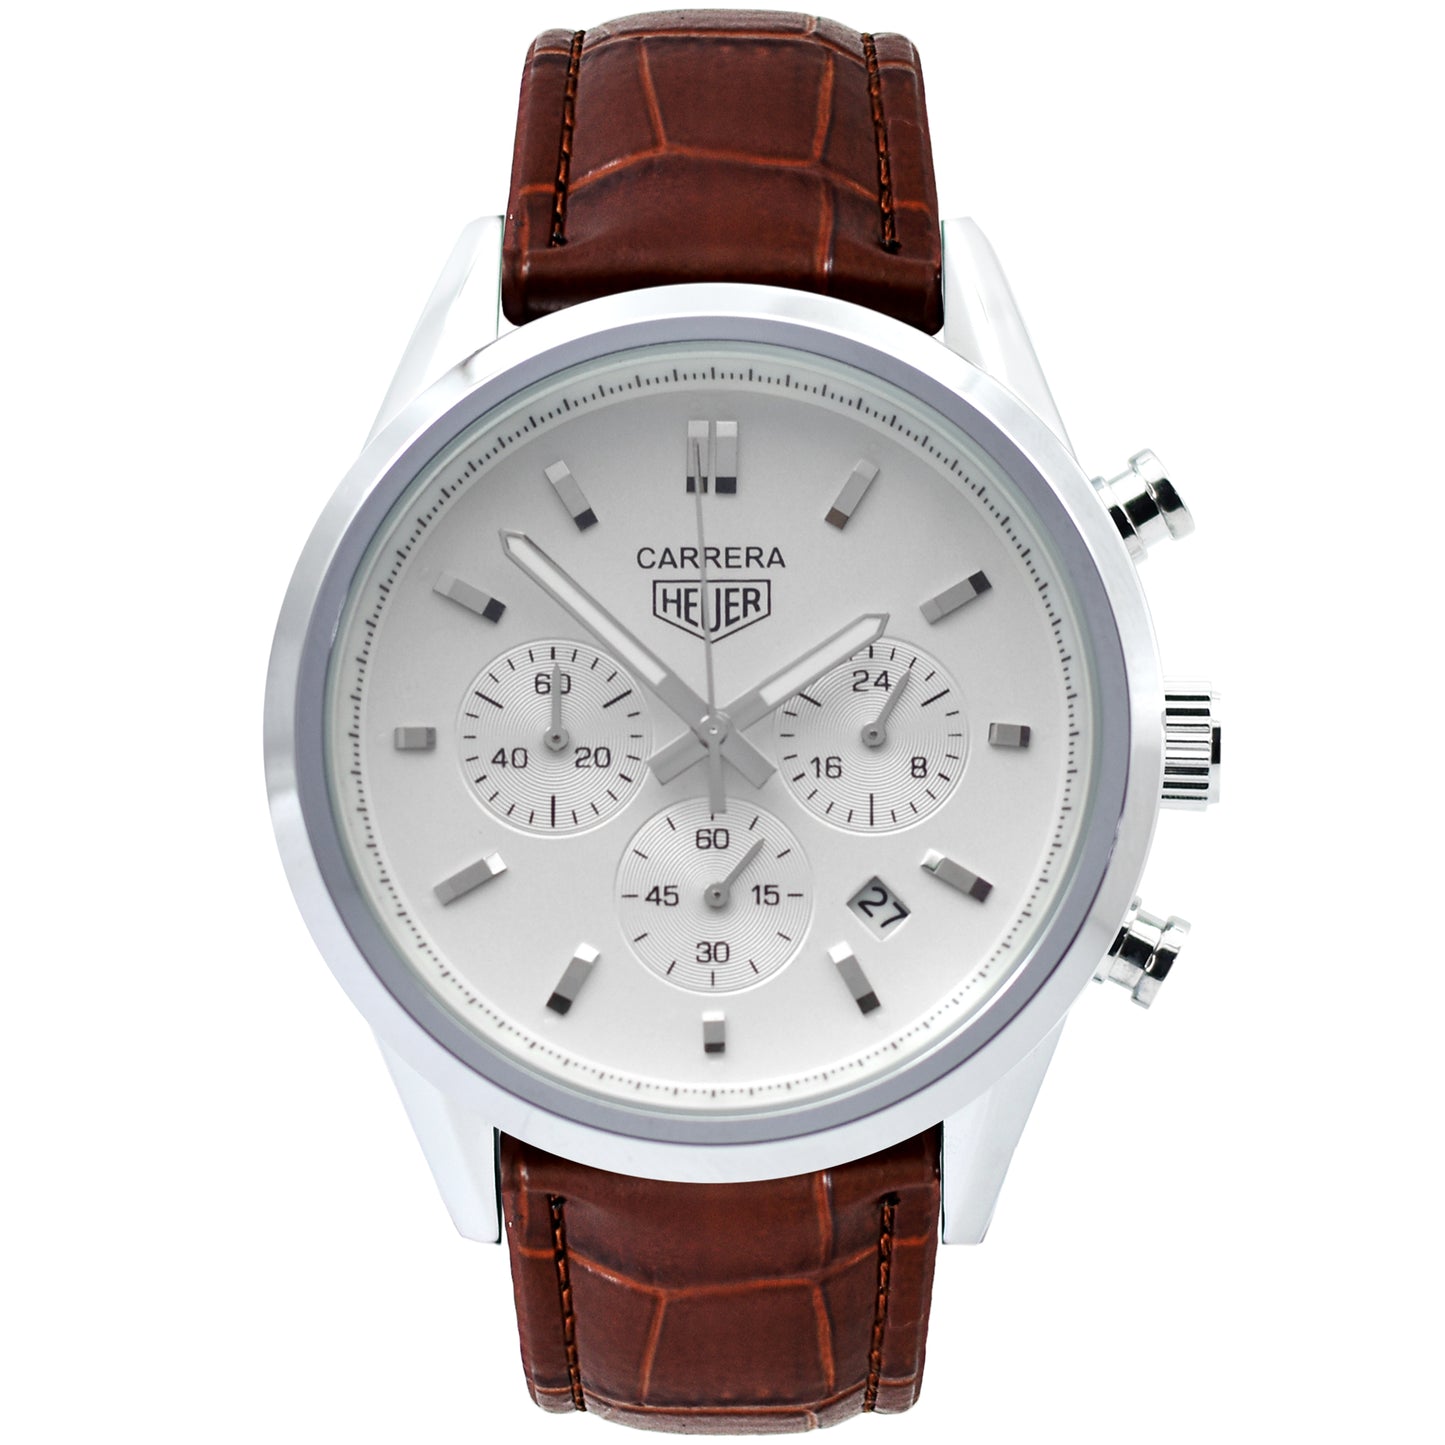 TAG CARRERA Calibre 1969 Chronograph Quartz Watch | CARA Watch 1085 A